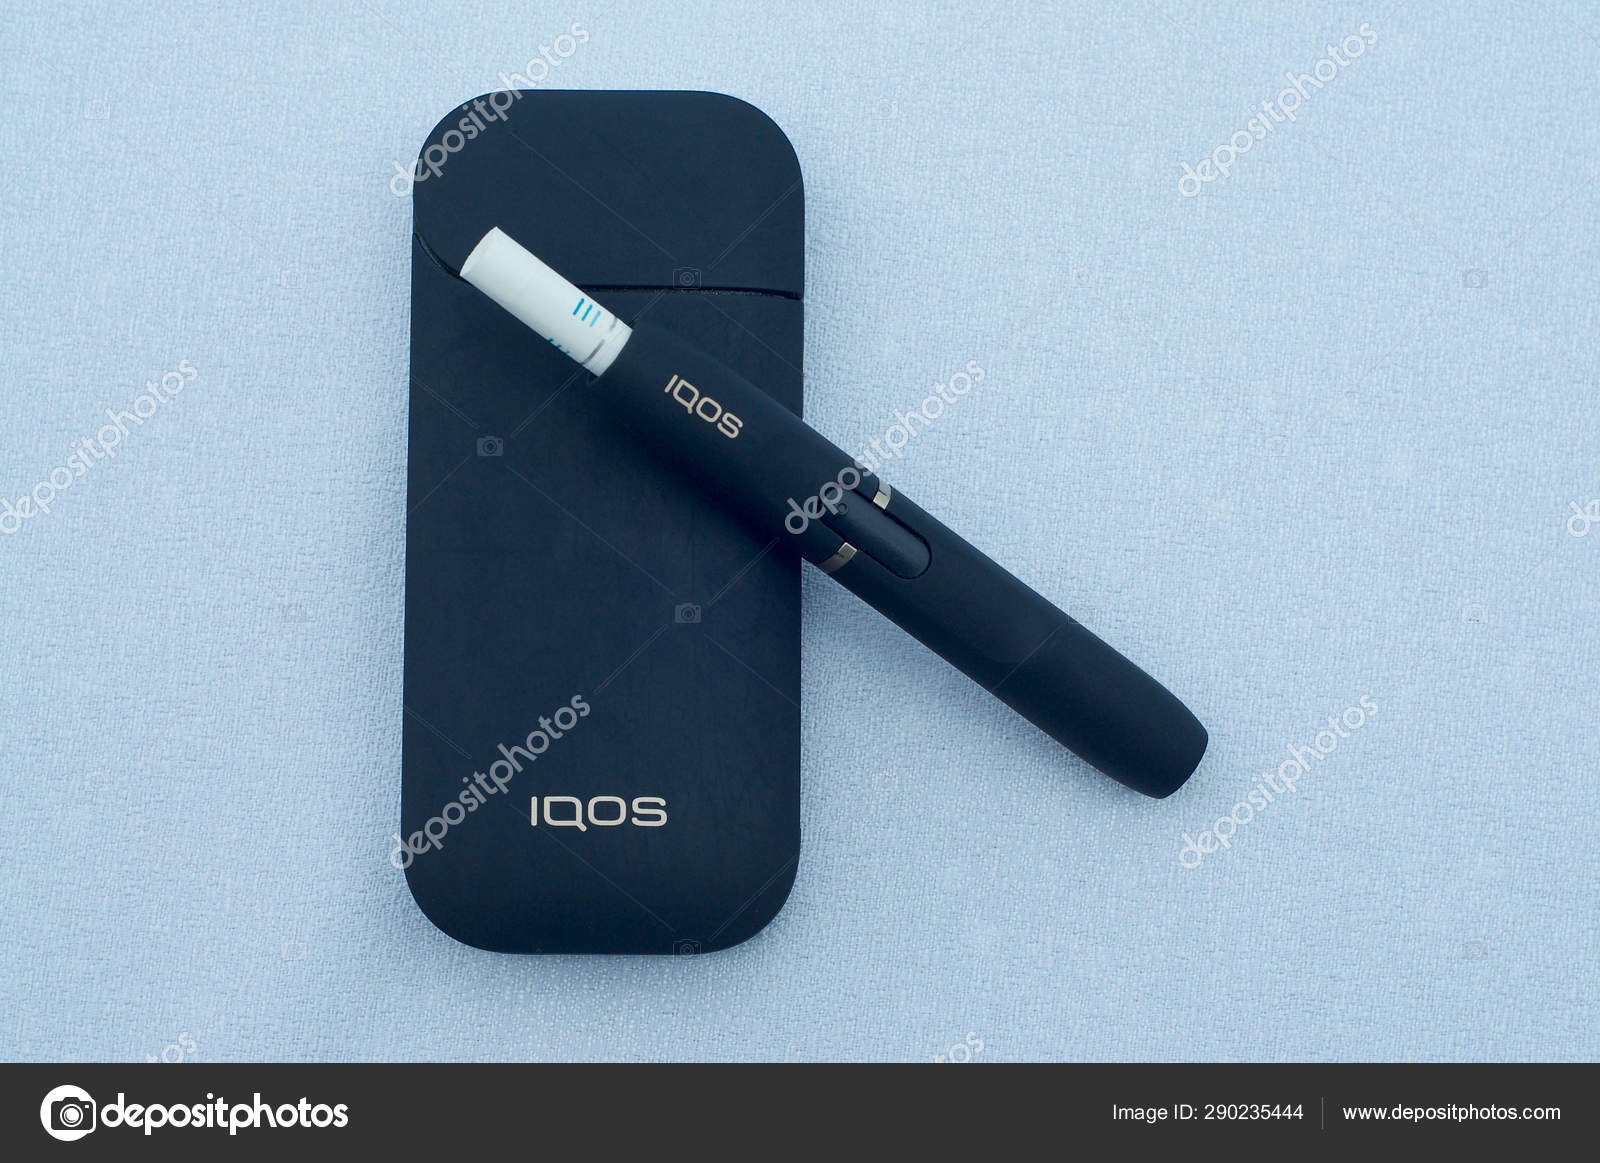 Iqos elektronische Zigarette mit Hitze-nicht-verbrennen-System —  Redaktionelles Stockfoto © Marlon_Trottmann #290235444